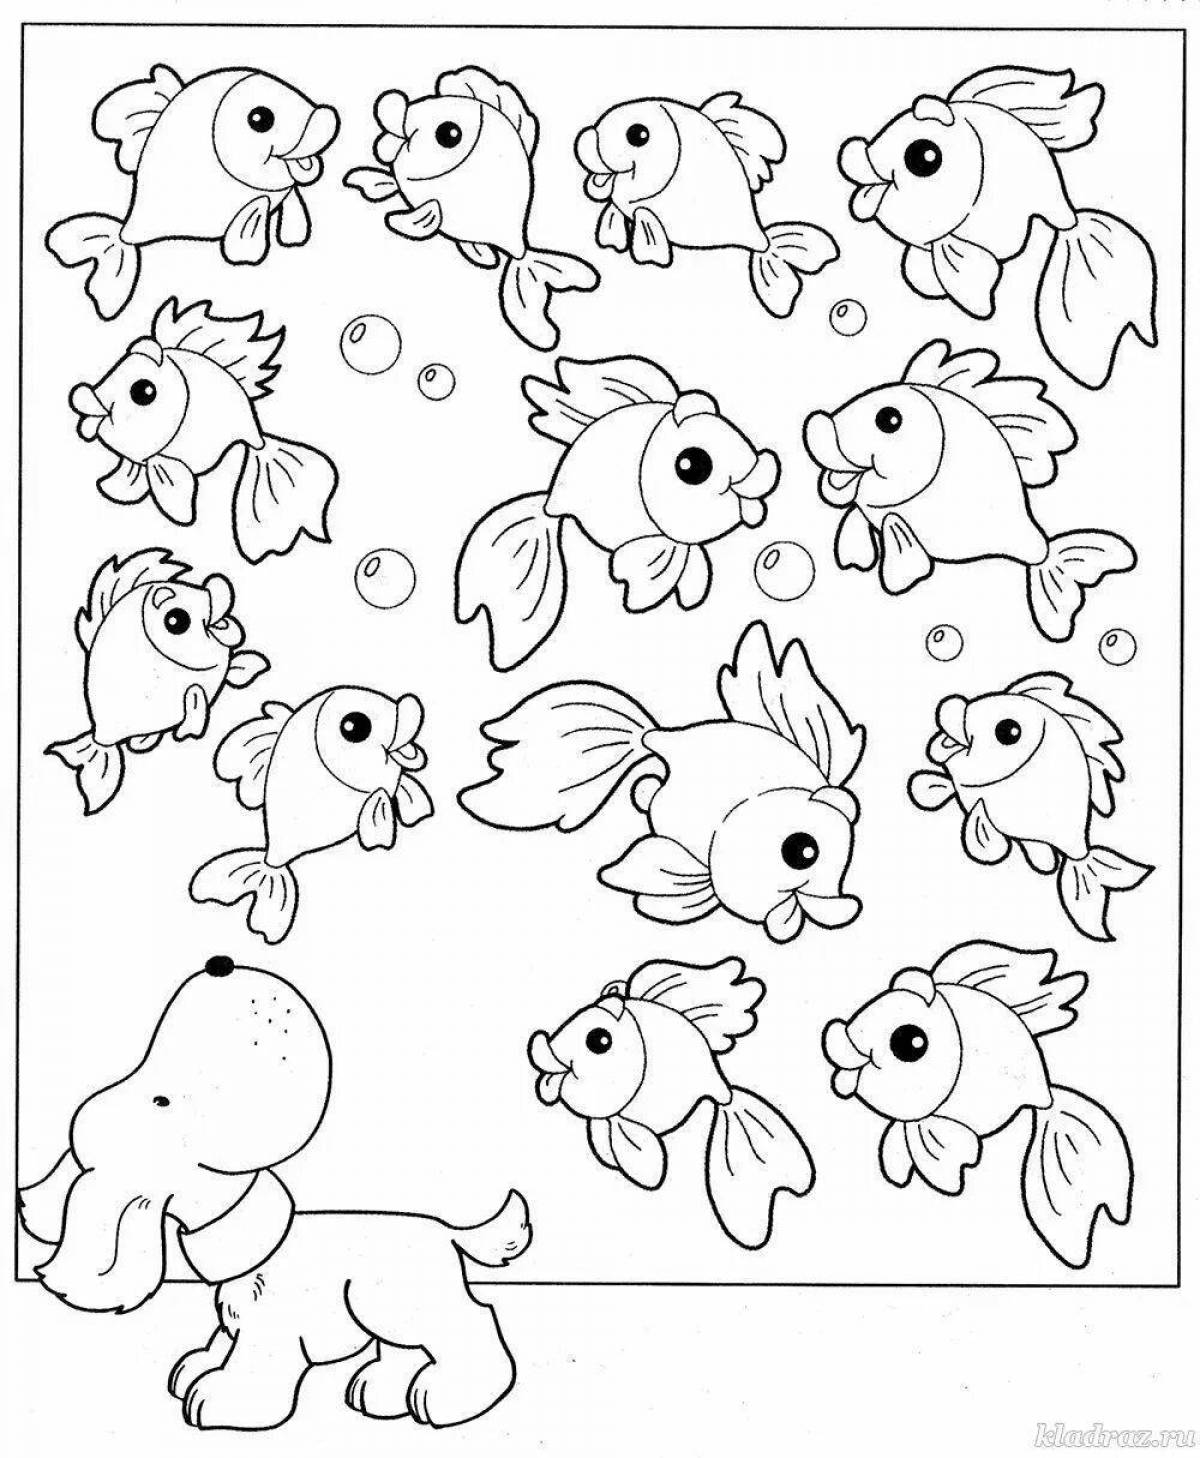 Cute fish coloring book